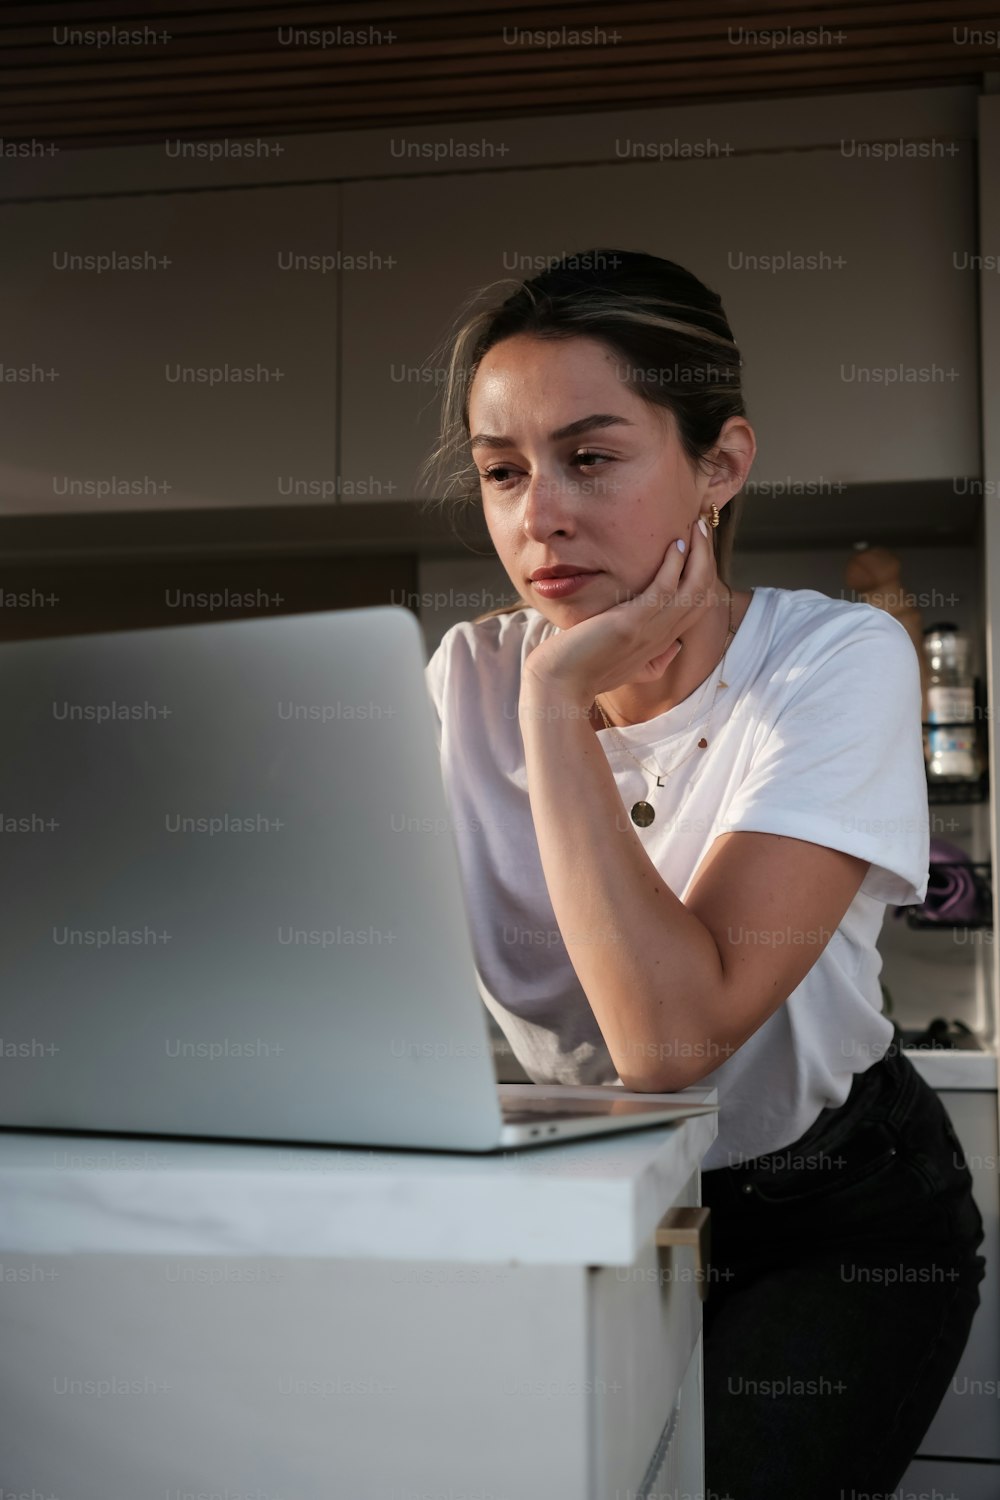 una donna seduta davanti a un computer portatile